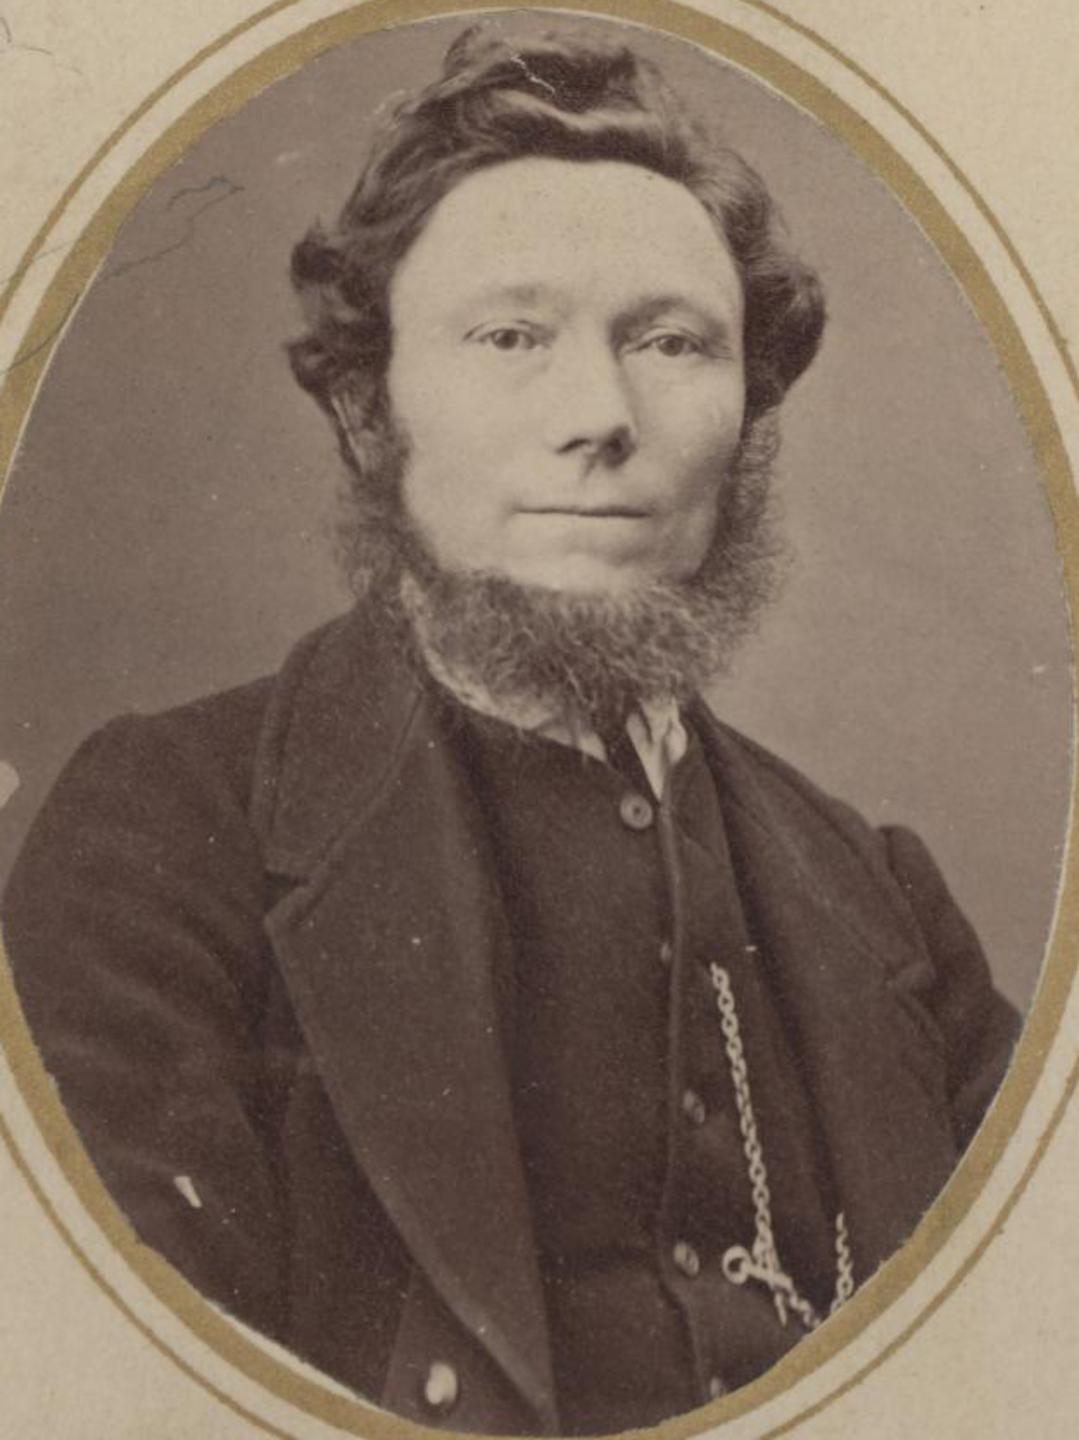 Olaus Olsen (1833 - 1922) Profile